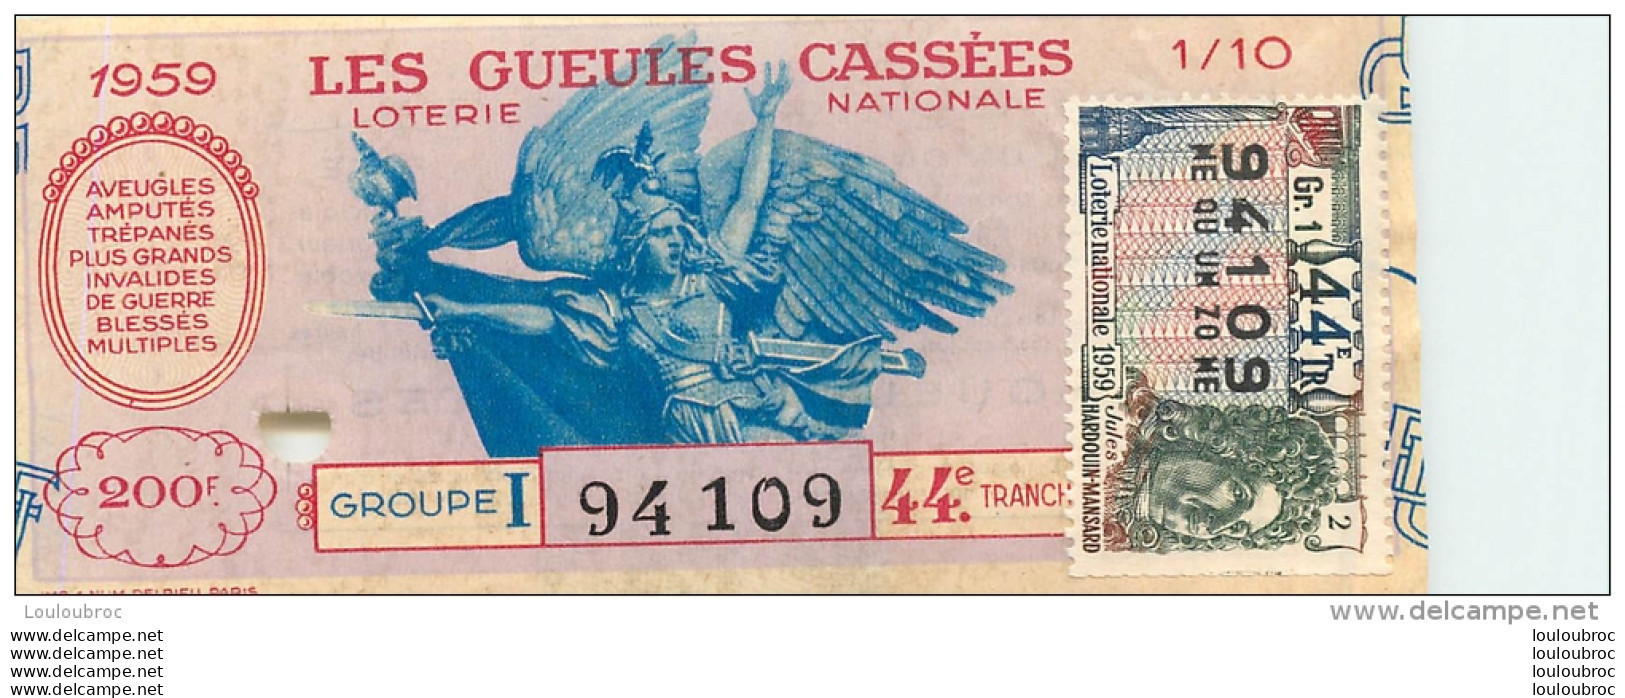 BILLET DE LOTERIE NATIONALE 1959 LES GUEULES CASSEES - Lotterielose